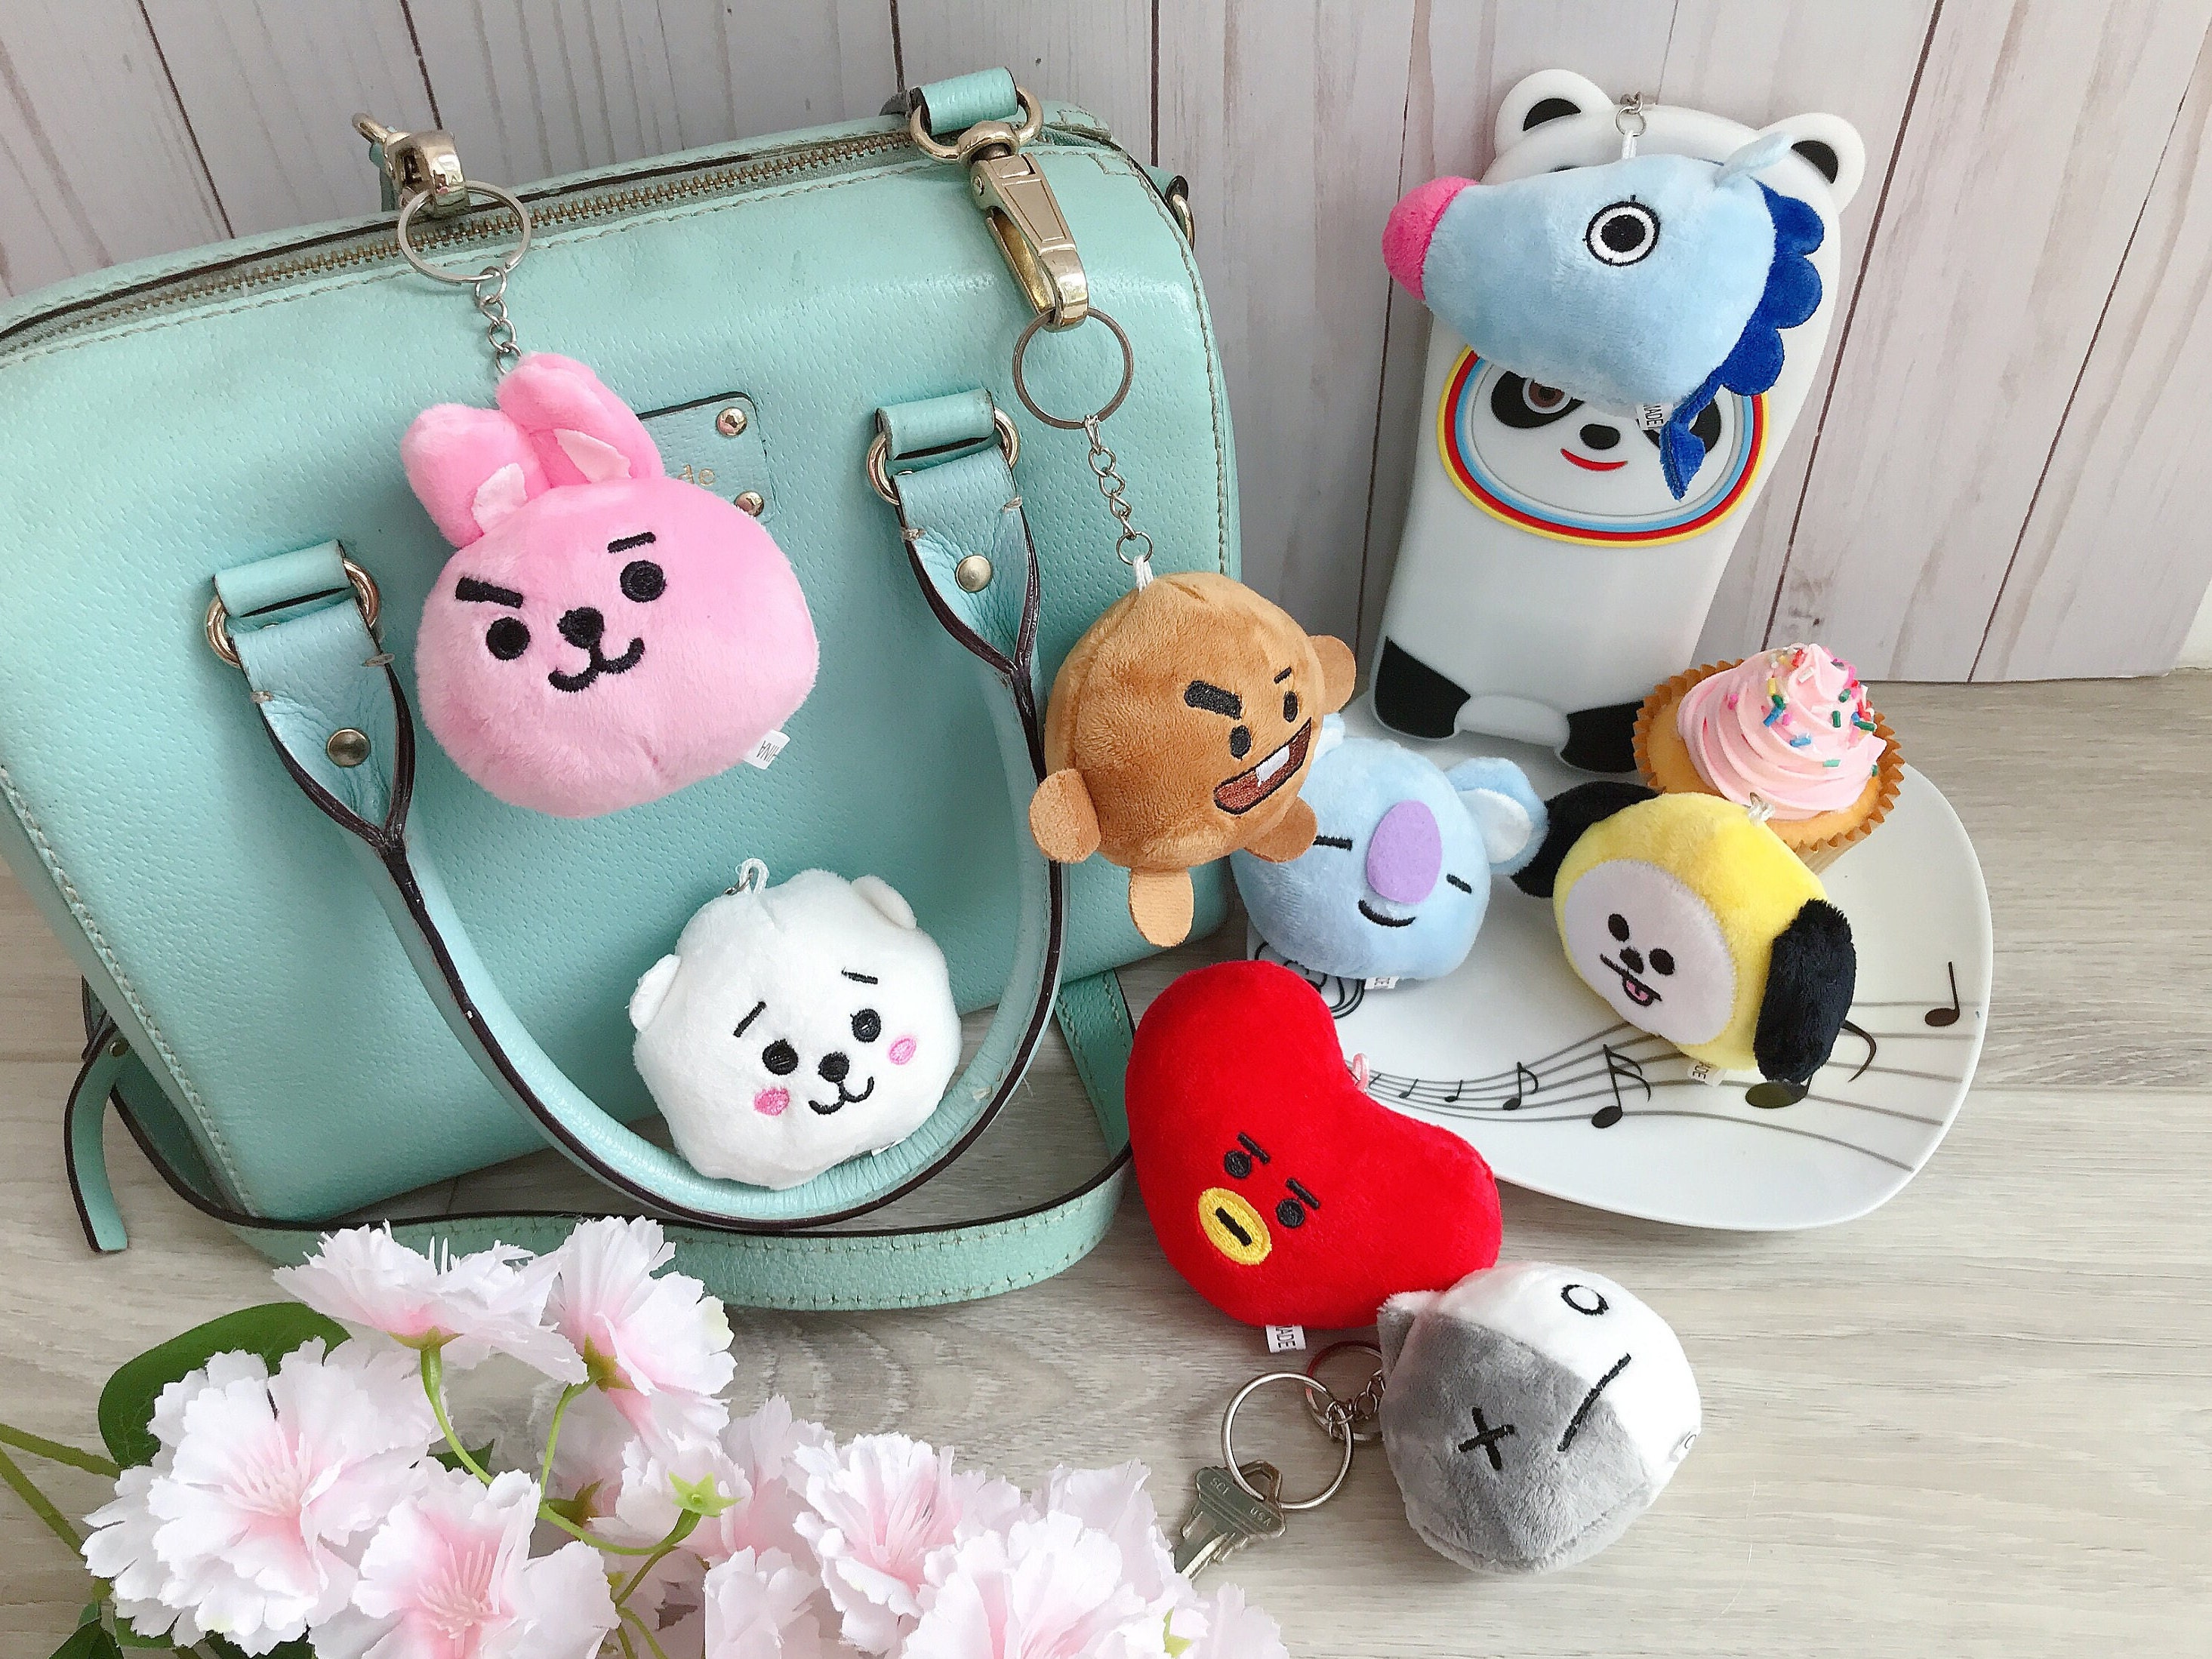 Kpop Fashion Bts Backpack Colleage Bookbag School Bag Jimin Suga Jin Jhope  Rm Jung Kook V Fans Casual Daypack Bts Merchandise